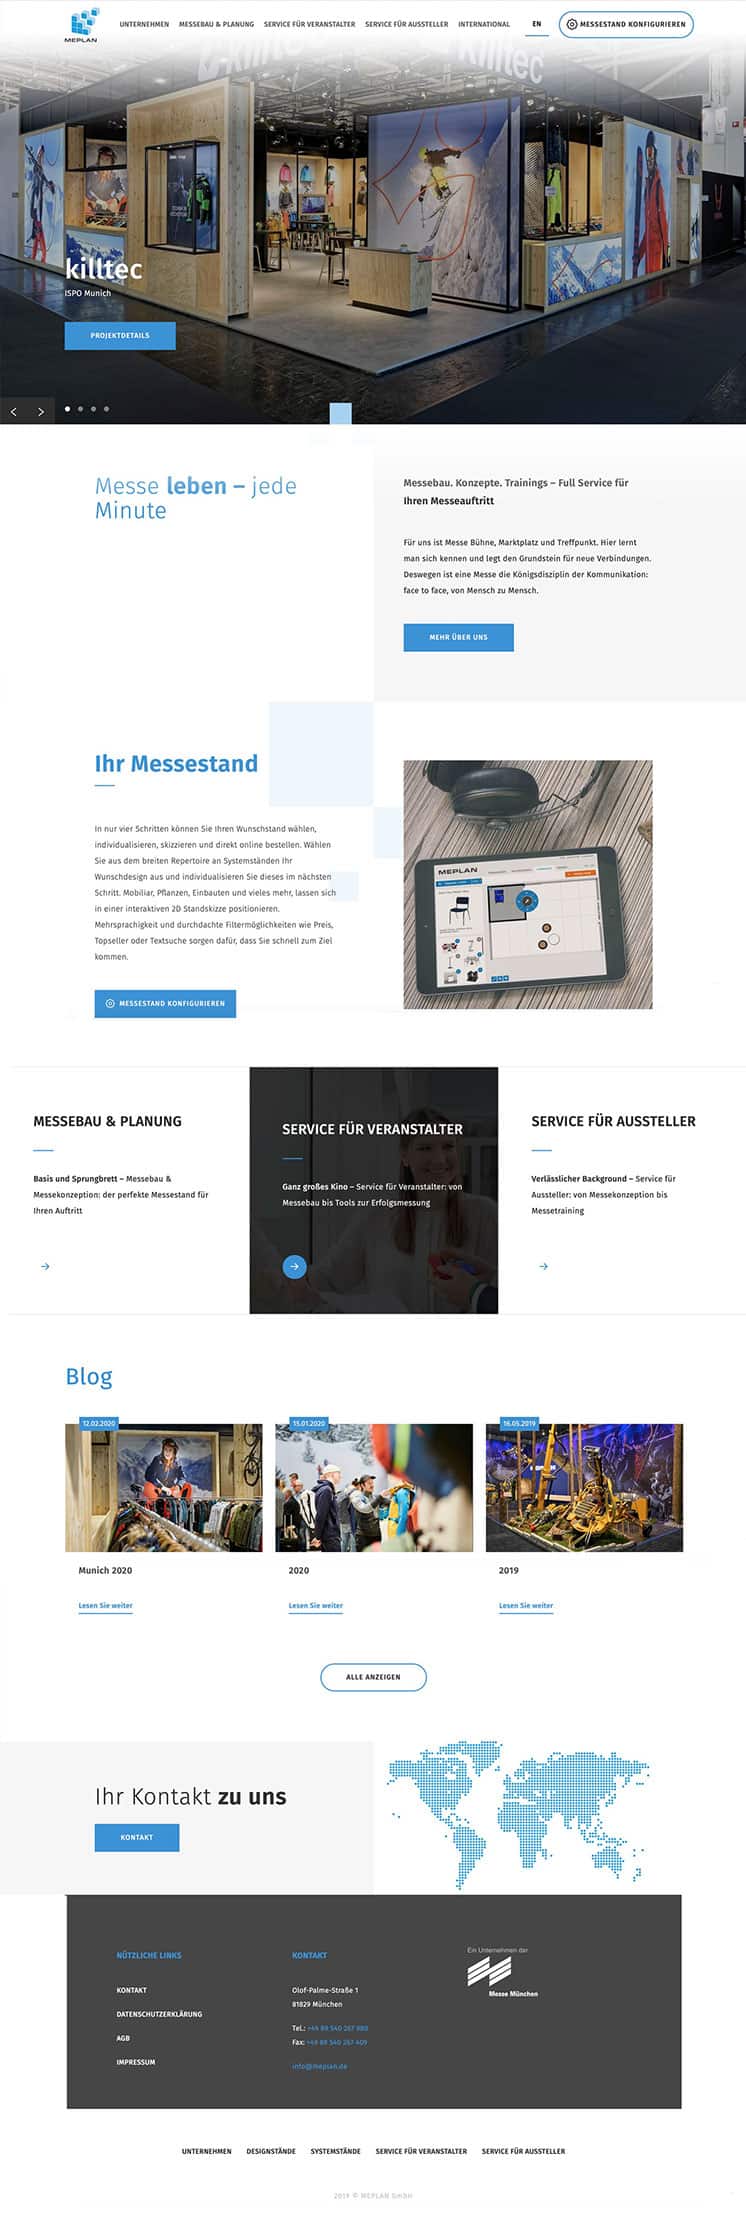 Konzeption, Webdesign und Development der Webseite für die Meplan GmbH